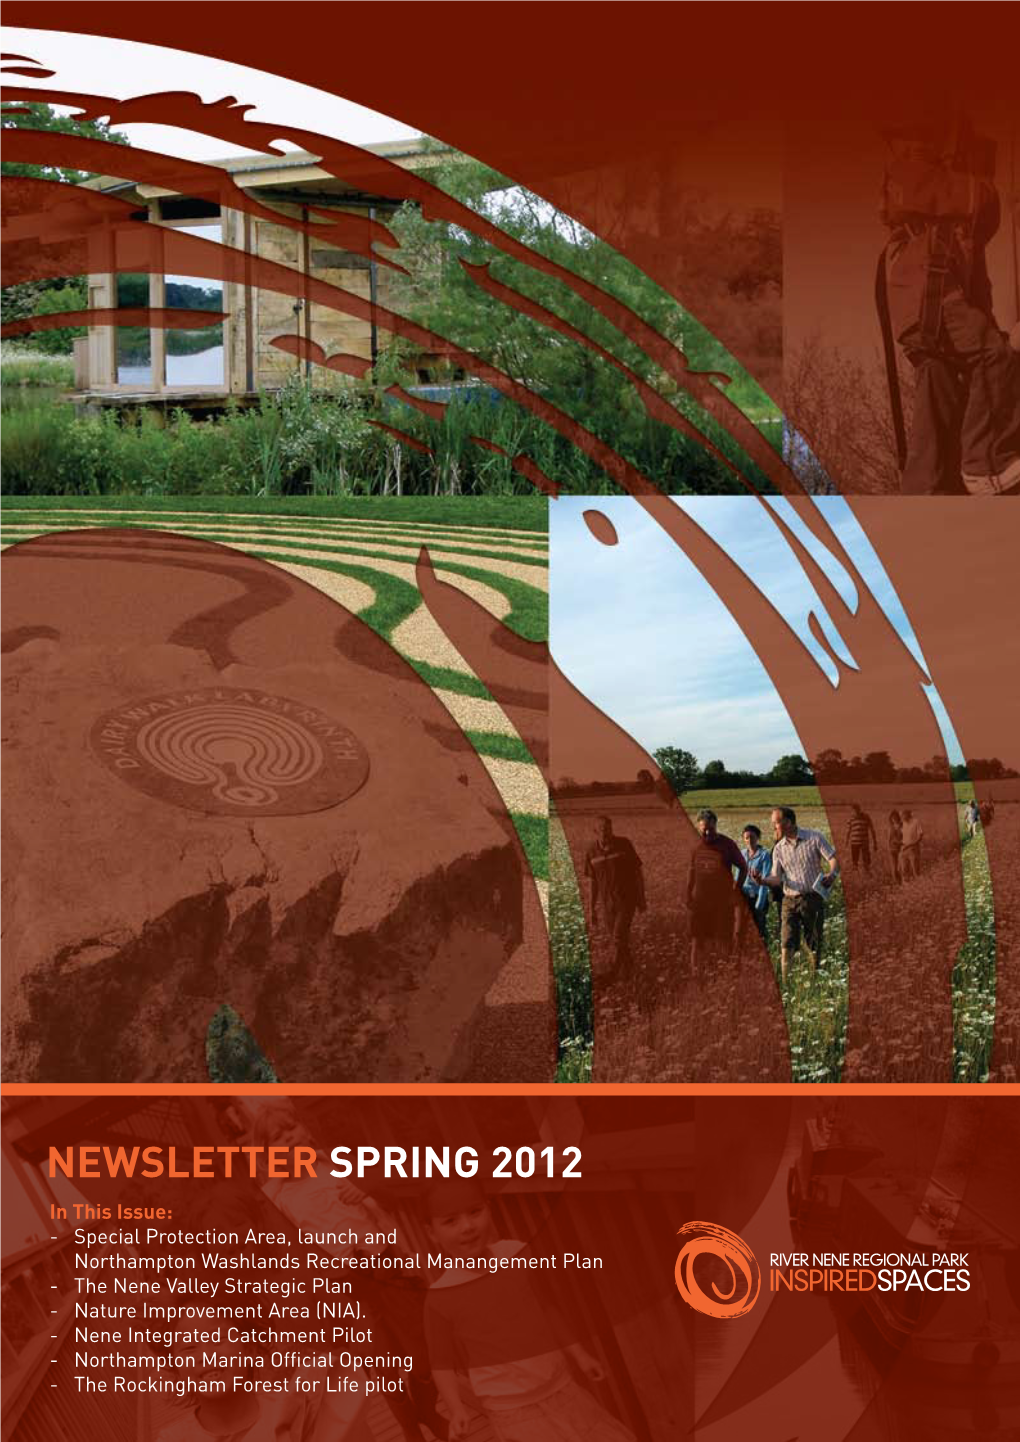 RNRP Newsletter Spring 2012